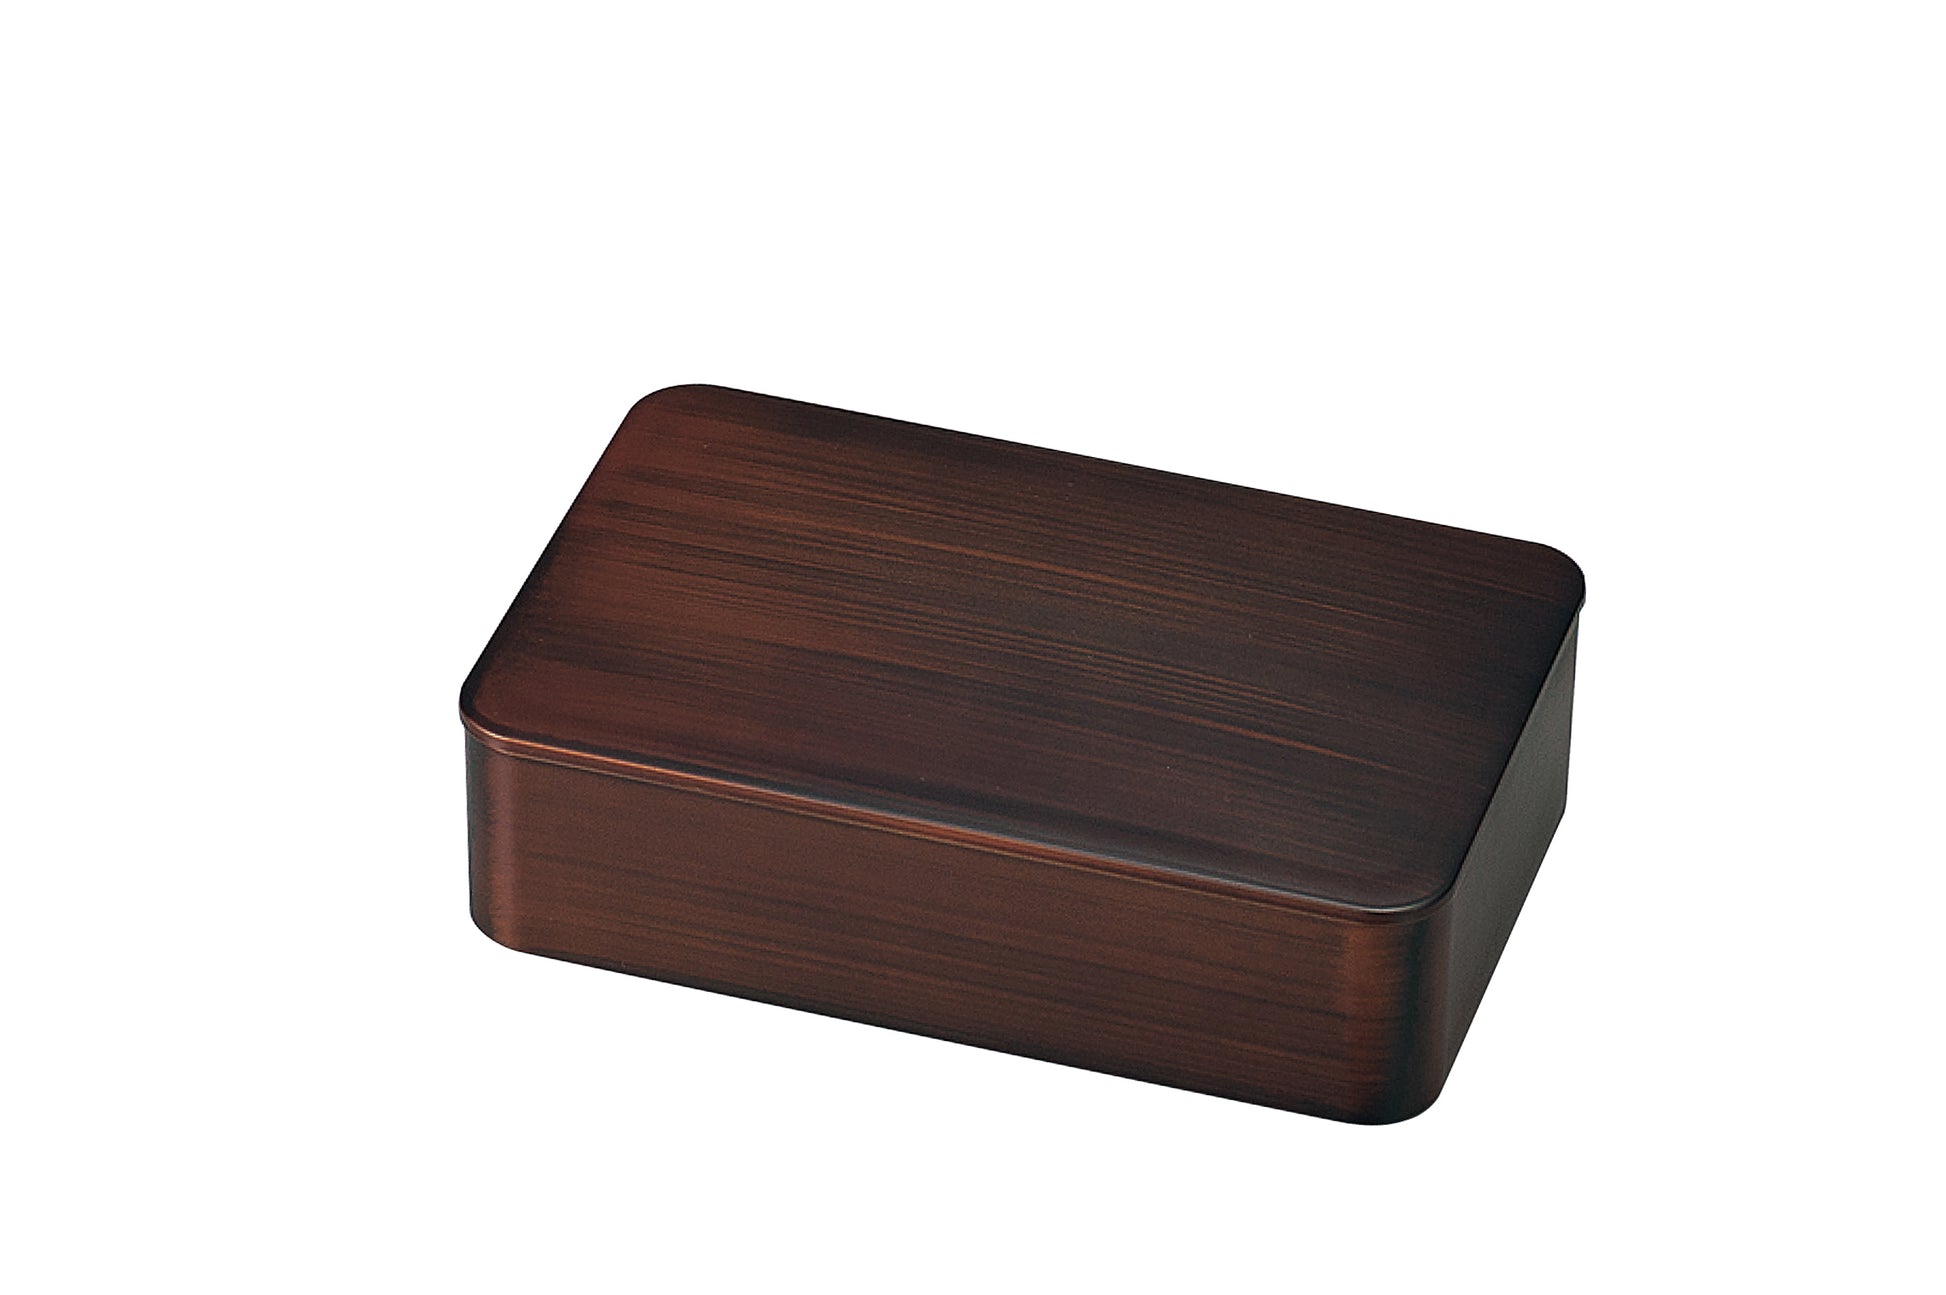 Bento Tek 41 oz Wood Grain and Black Buddha Box All-in-One